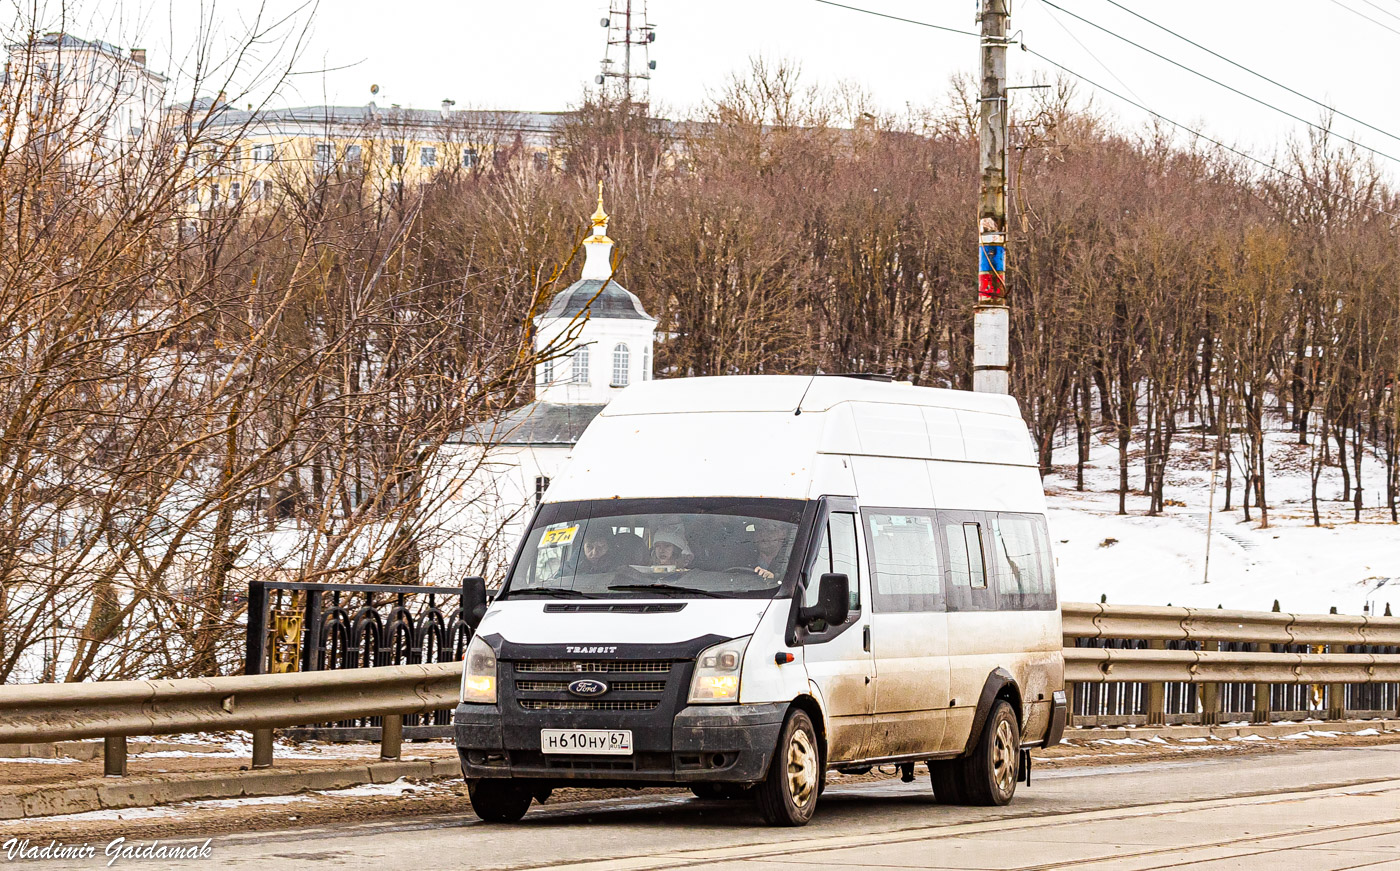 Smolensk, Nizhegorodets-222709 (Ford Transit) # Н 610 НУ 67